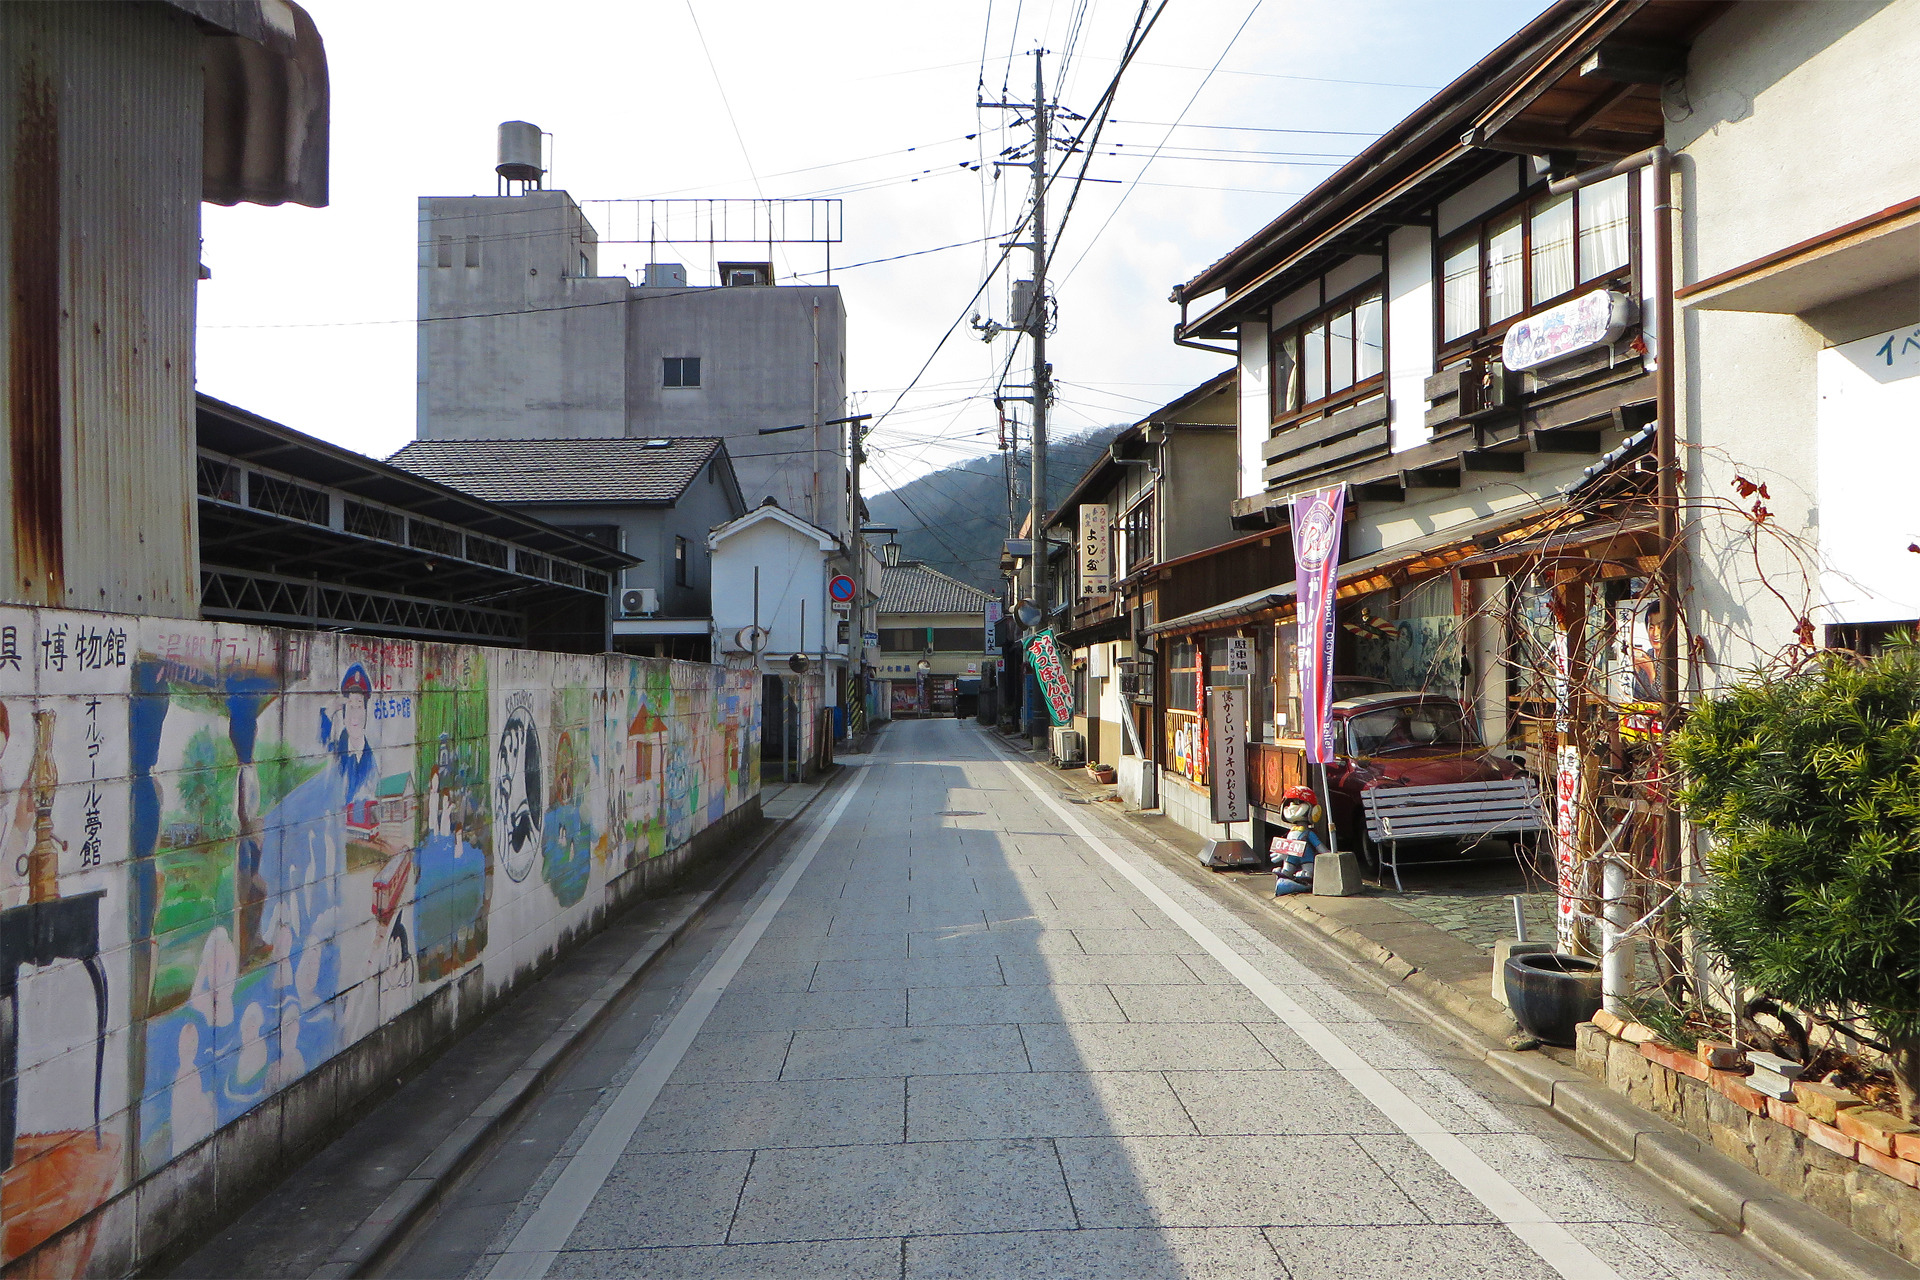 日本の風景 昭和レトロな街並み 湯郷温泉3 壁紙19x1280 壁紙館